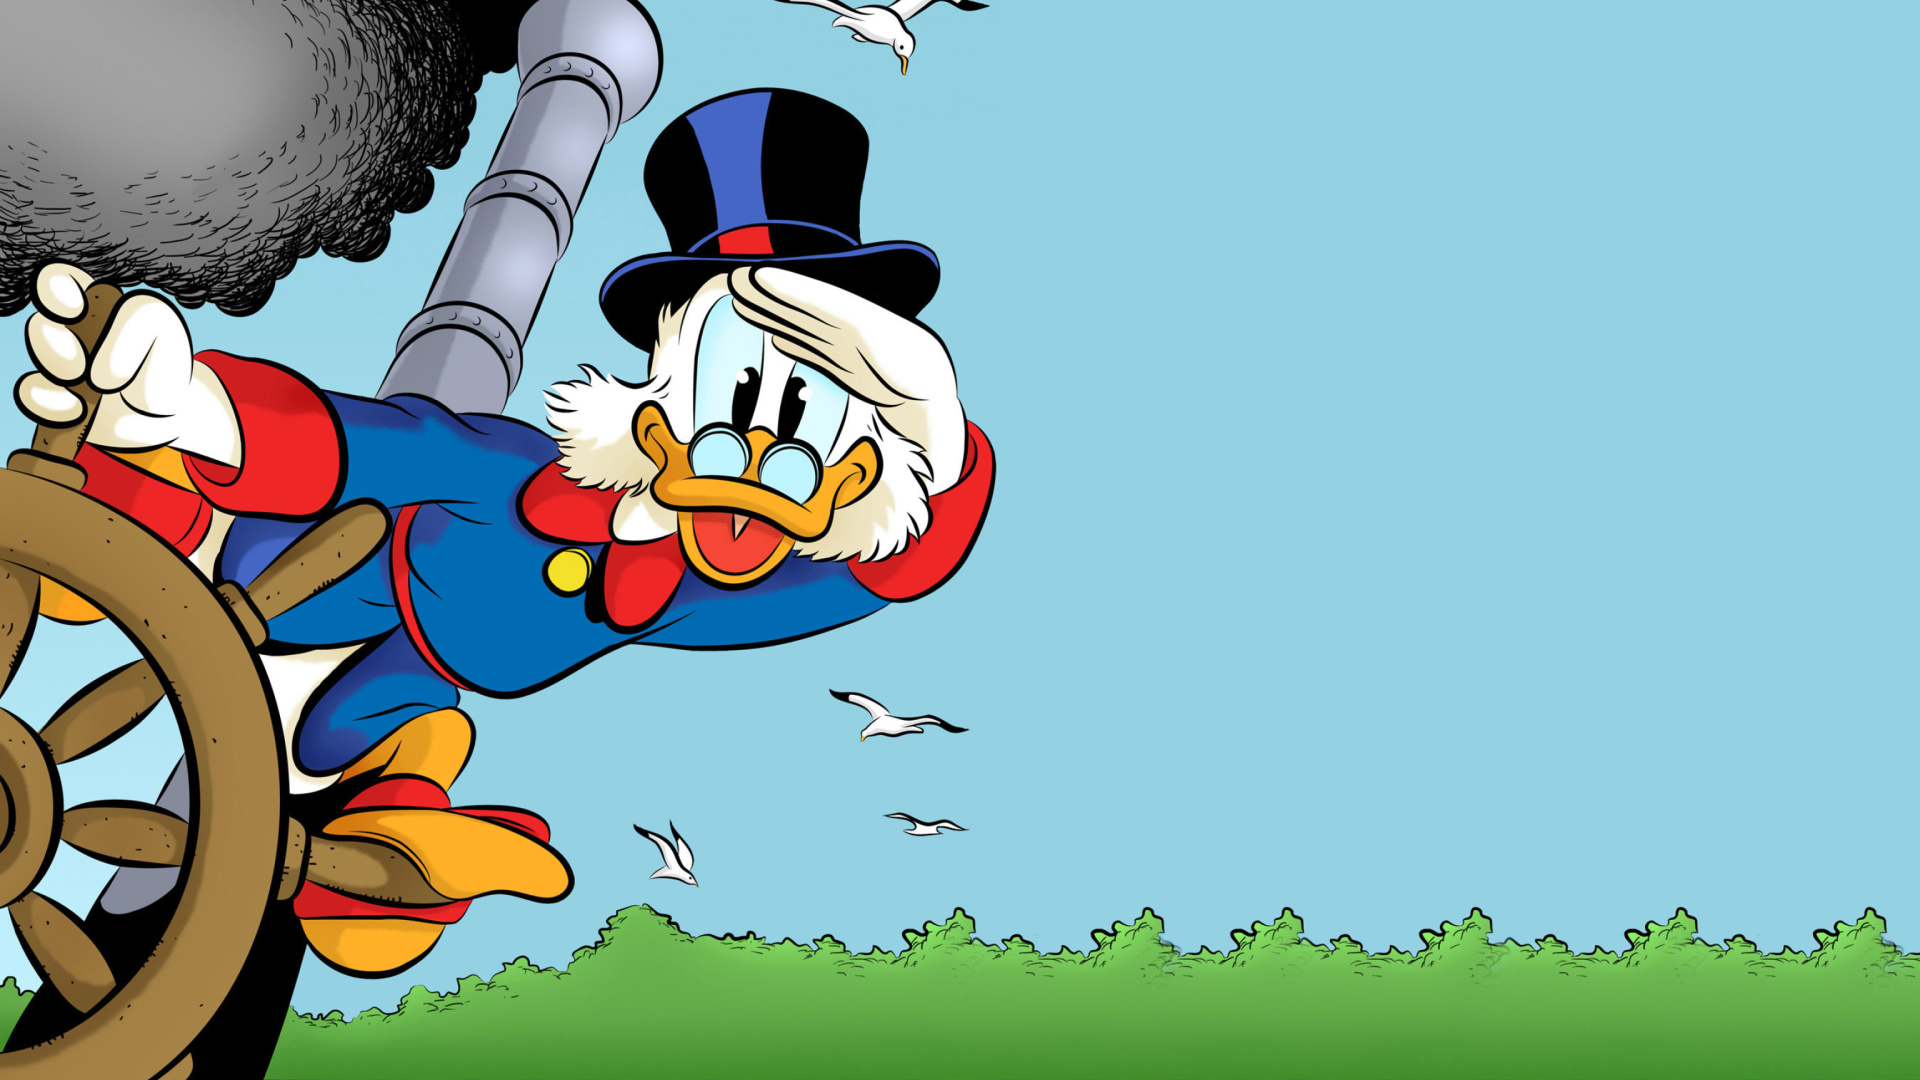 Das Scrooge McDuck from Ducktales Wallpaper 1920x1080